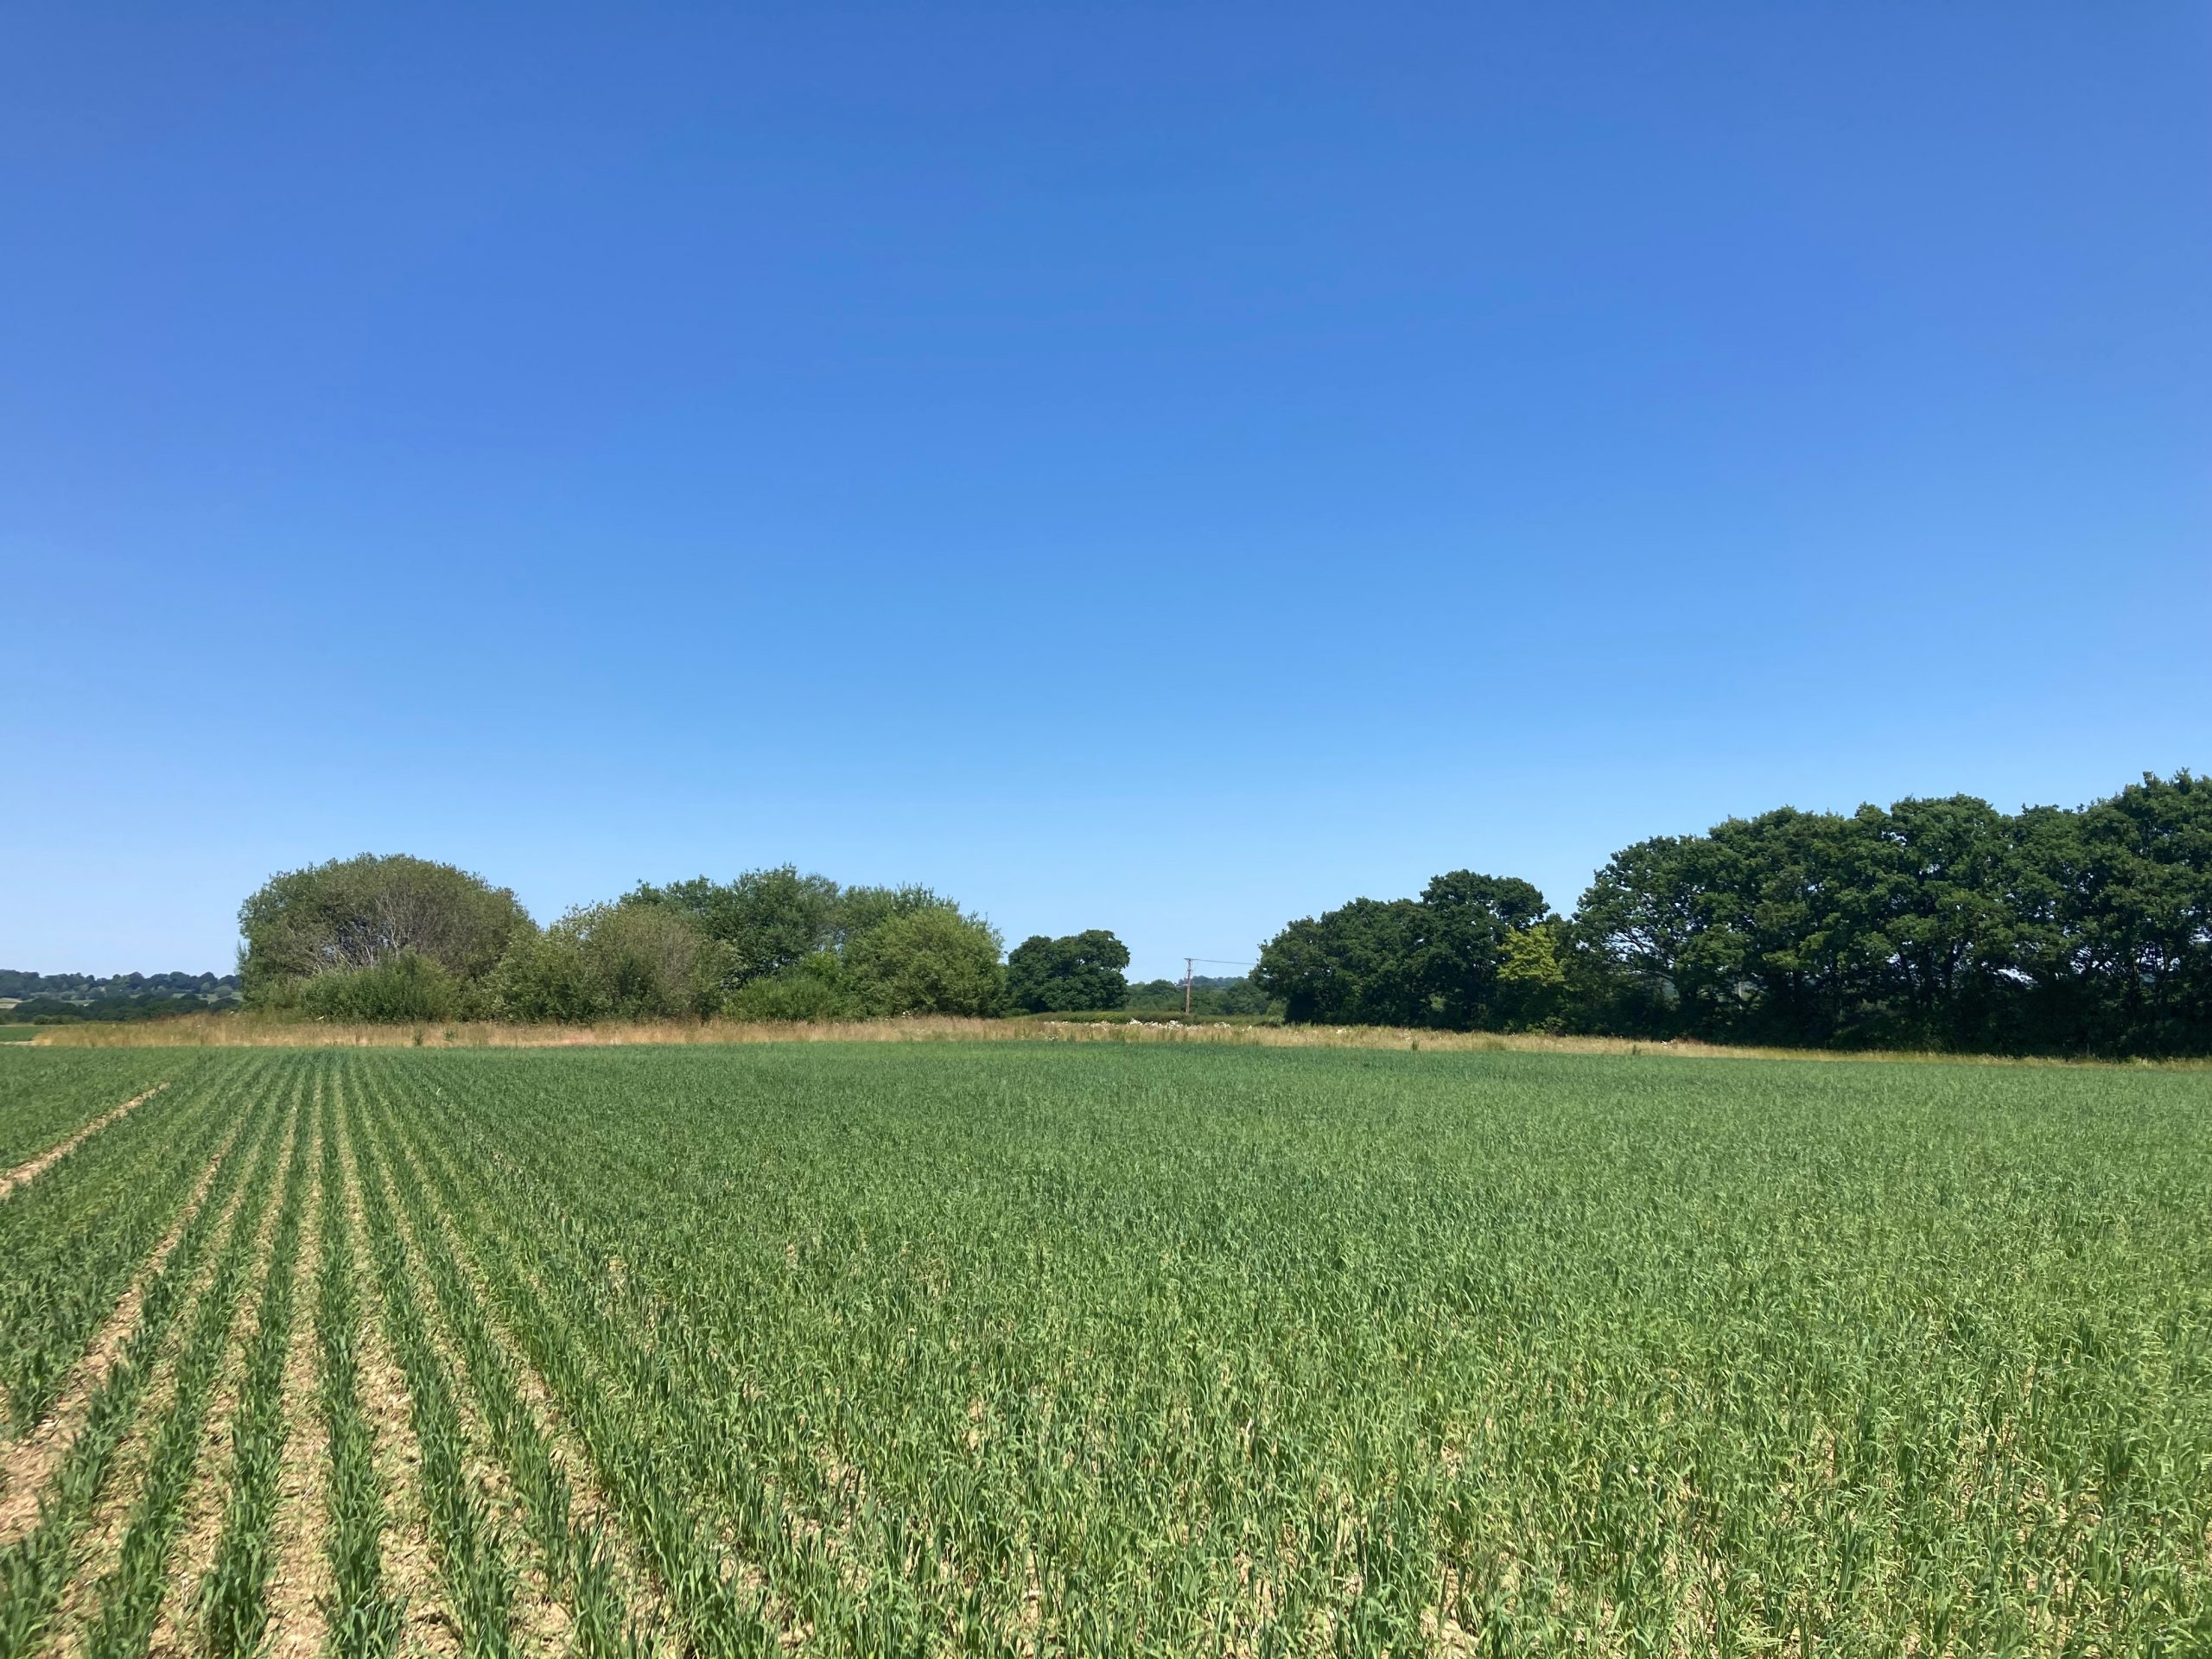 A wheat field under a blue sky in Kent.